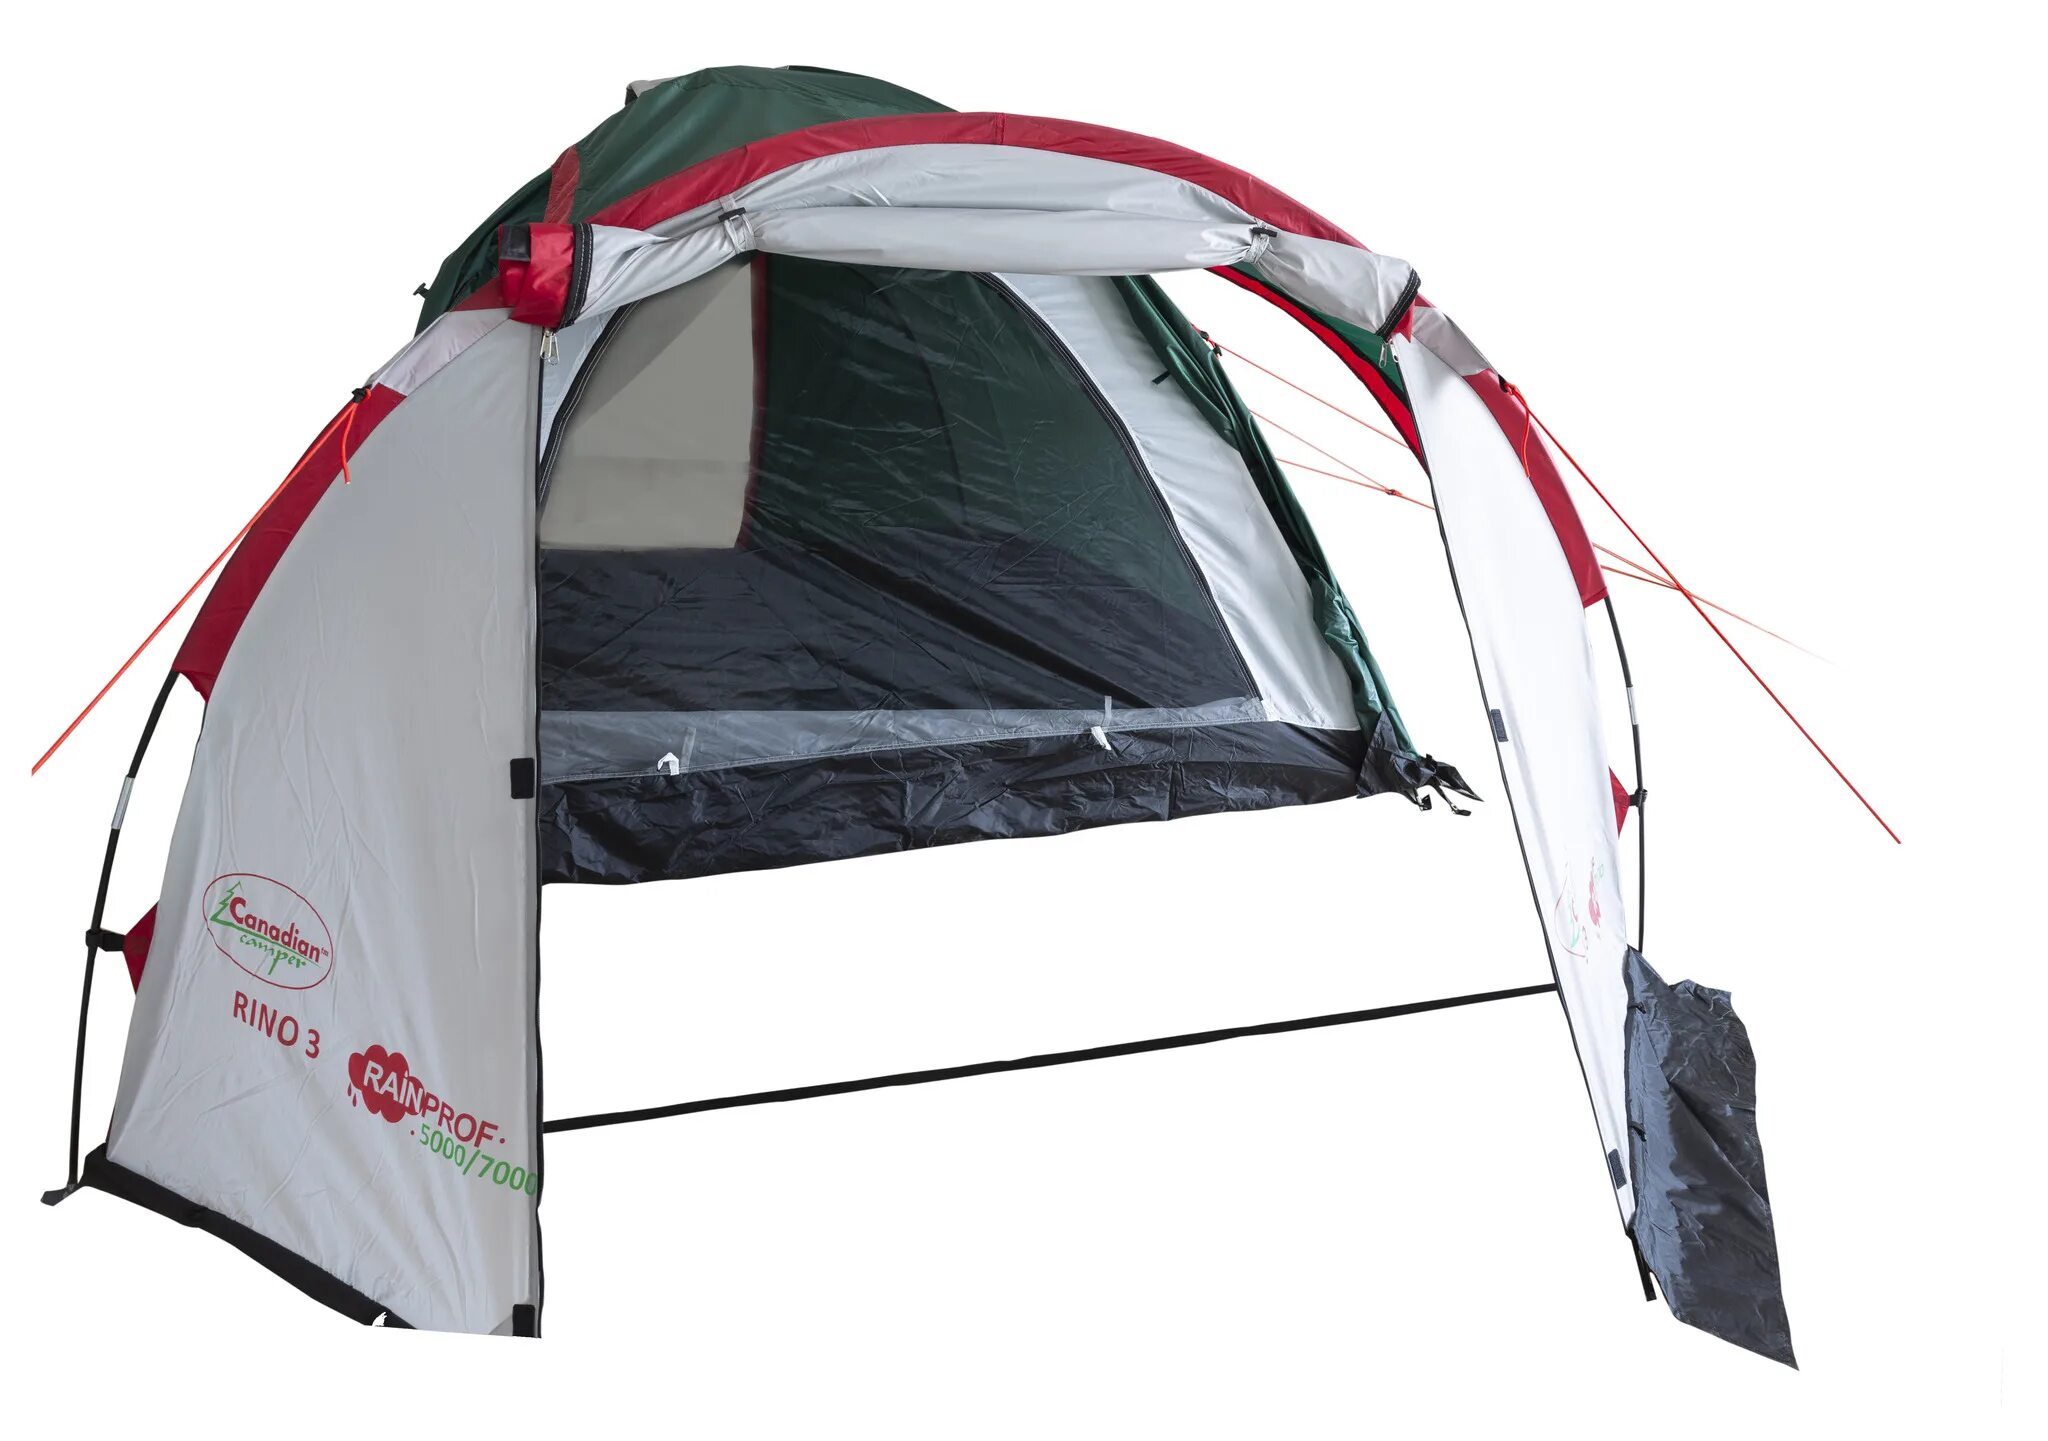 Canadian camper купить. Канадиан кемпер Рино 3. Палатка Rino 3. Палатка Канадиан кемпер Карибу 3. Палатка Canadian Camper Karibu 3 Royal.